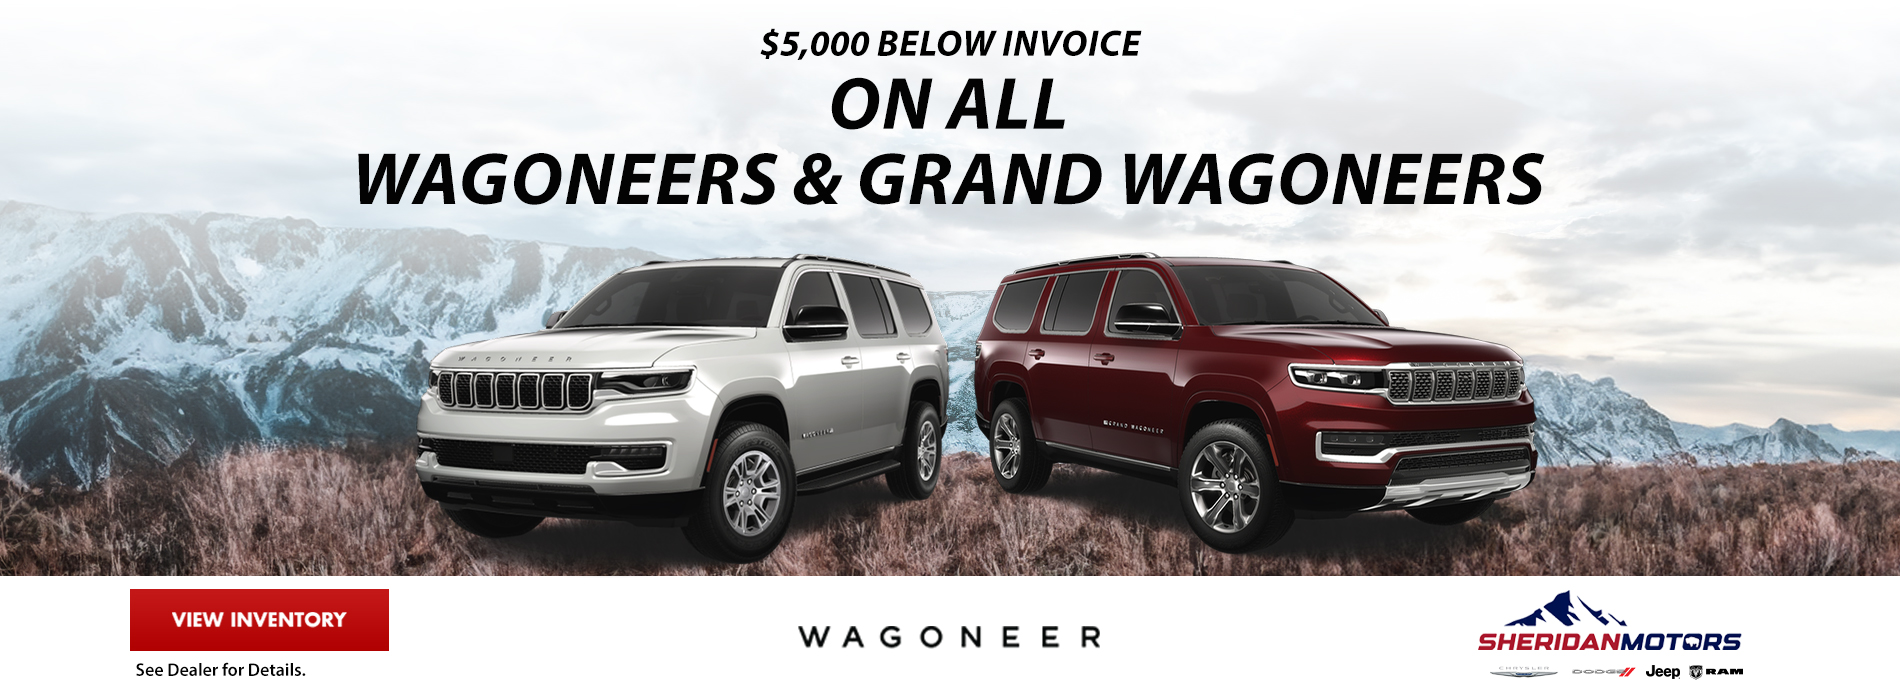 $5,000 BELOW INVOICE ON ALL WAGONEERS & GRAND WAGONEERS